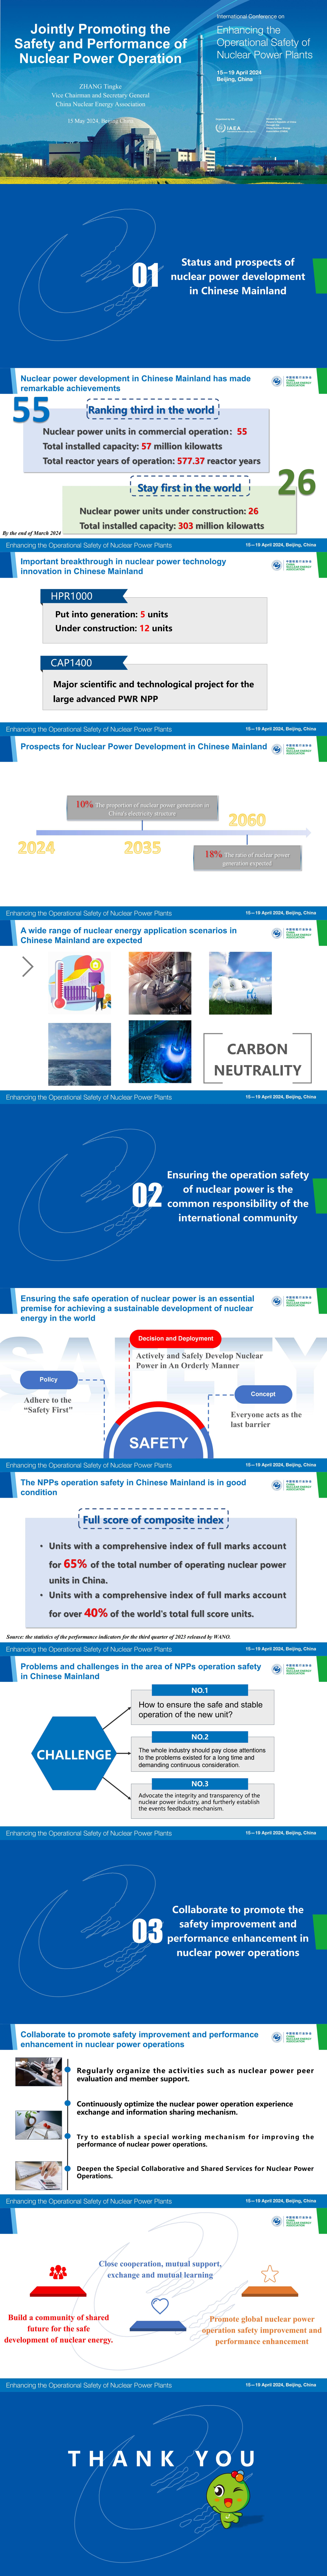 更新-Jointly Promoting the Safety and Performance of Nuclear Power Operation-Tingke ZHANG_00.jpg